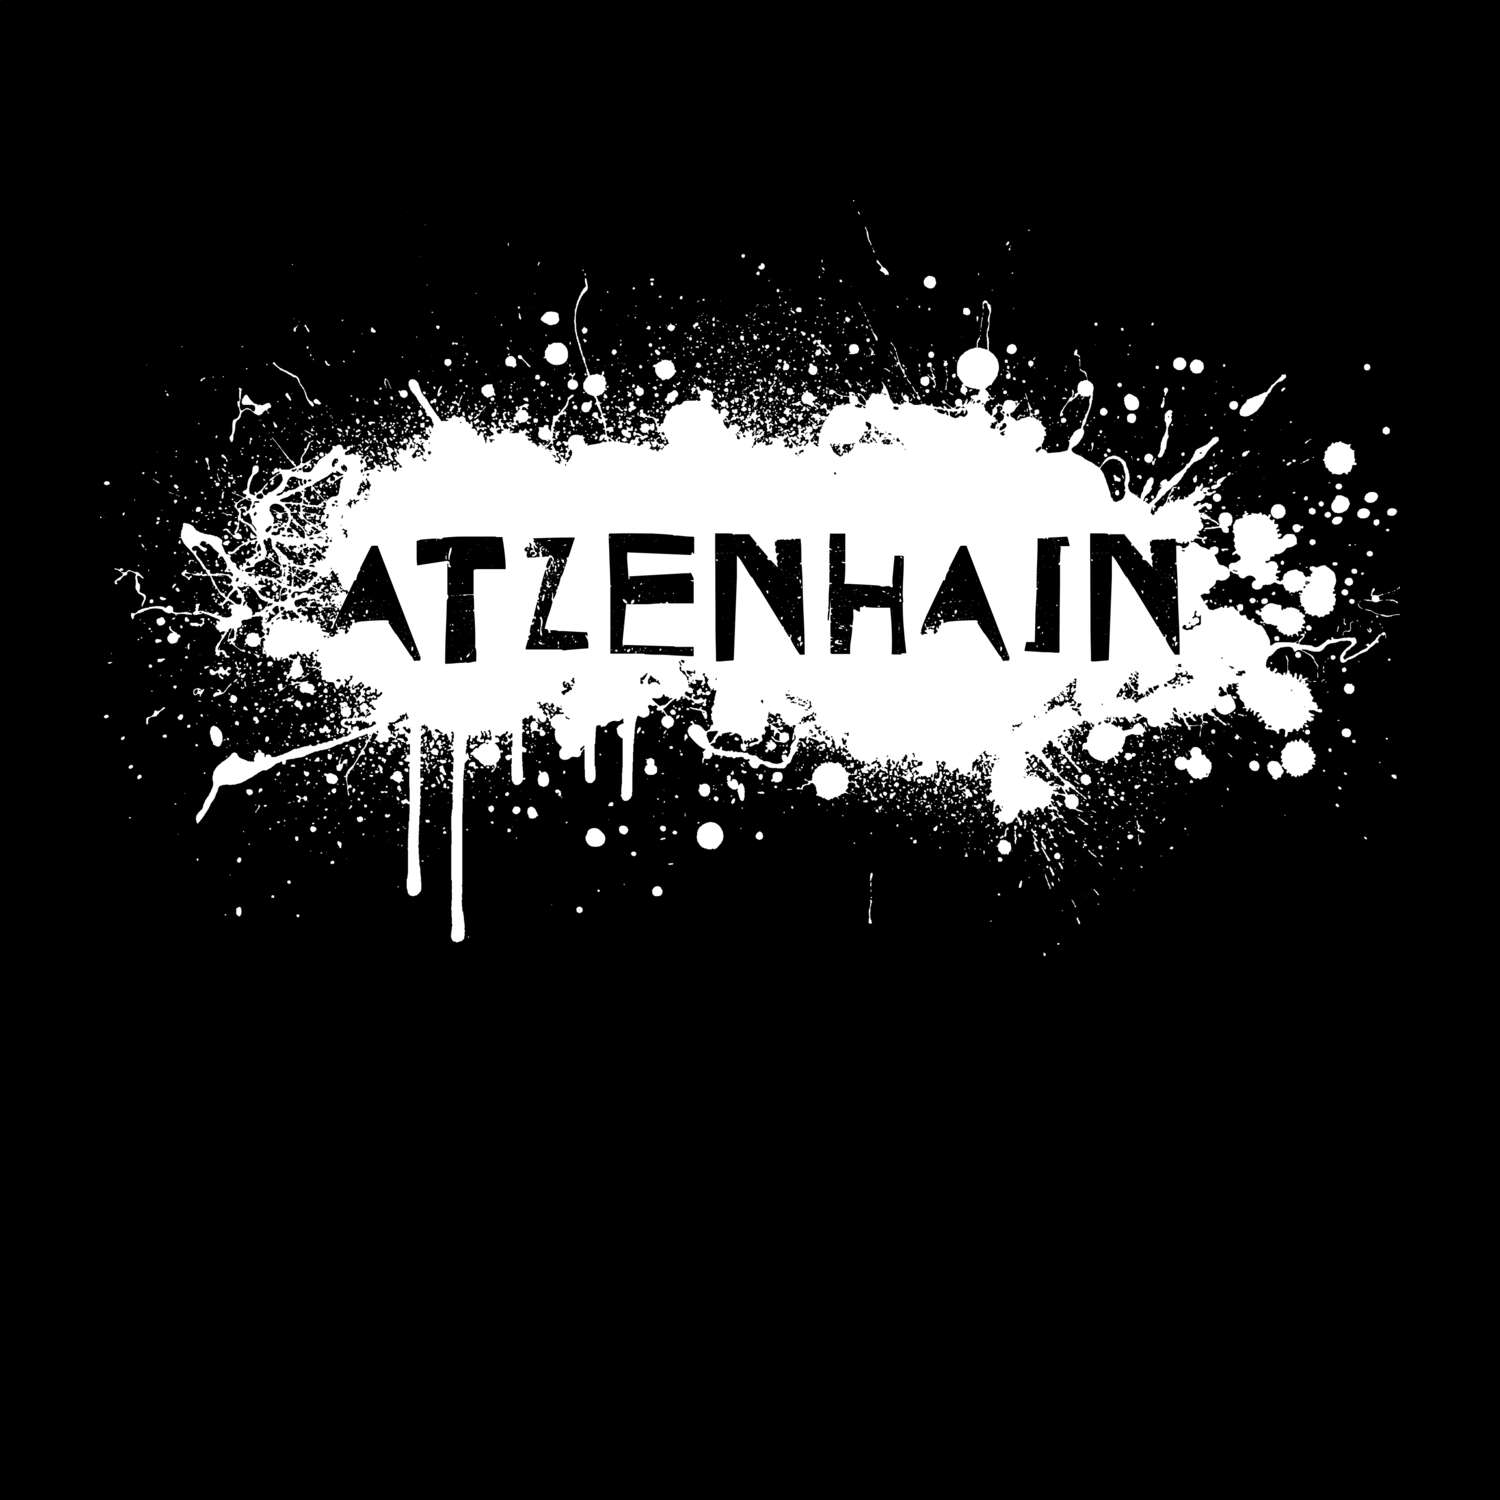 Atzenhain T-Shirt »Paint Splash Punk«